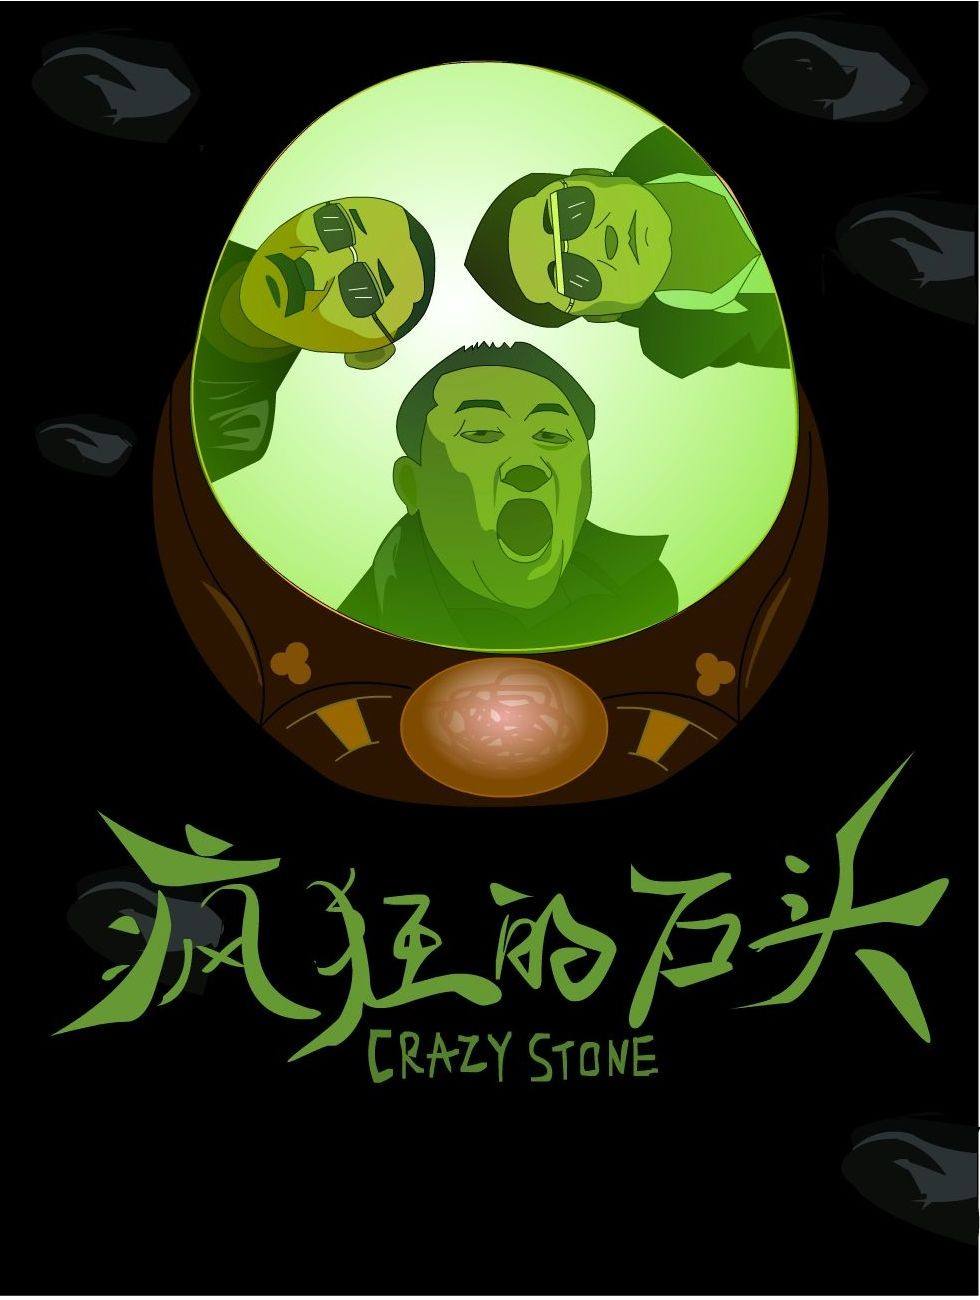 黄渤经典喜剧电影《疯狂的石头》那些不为人知的细节